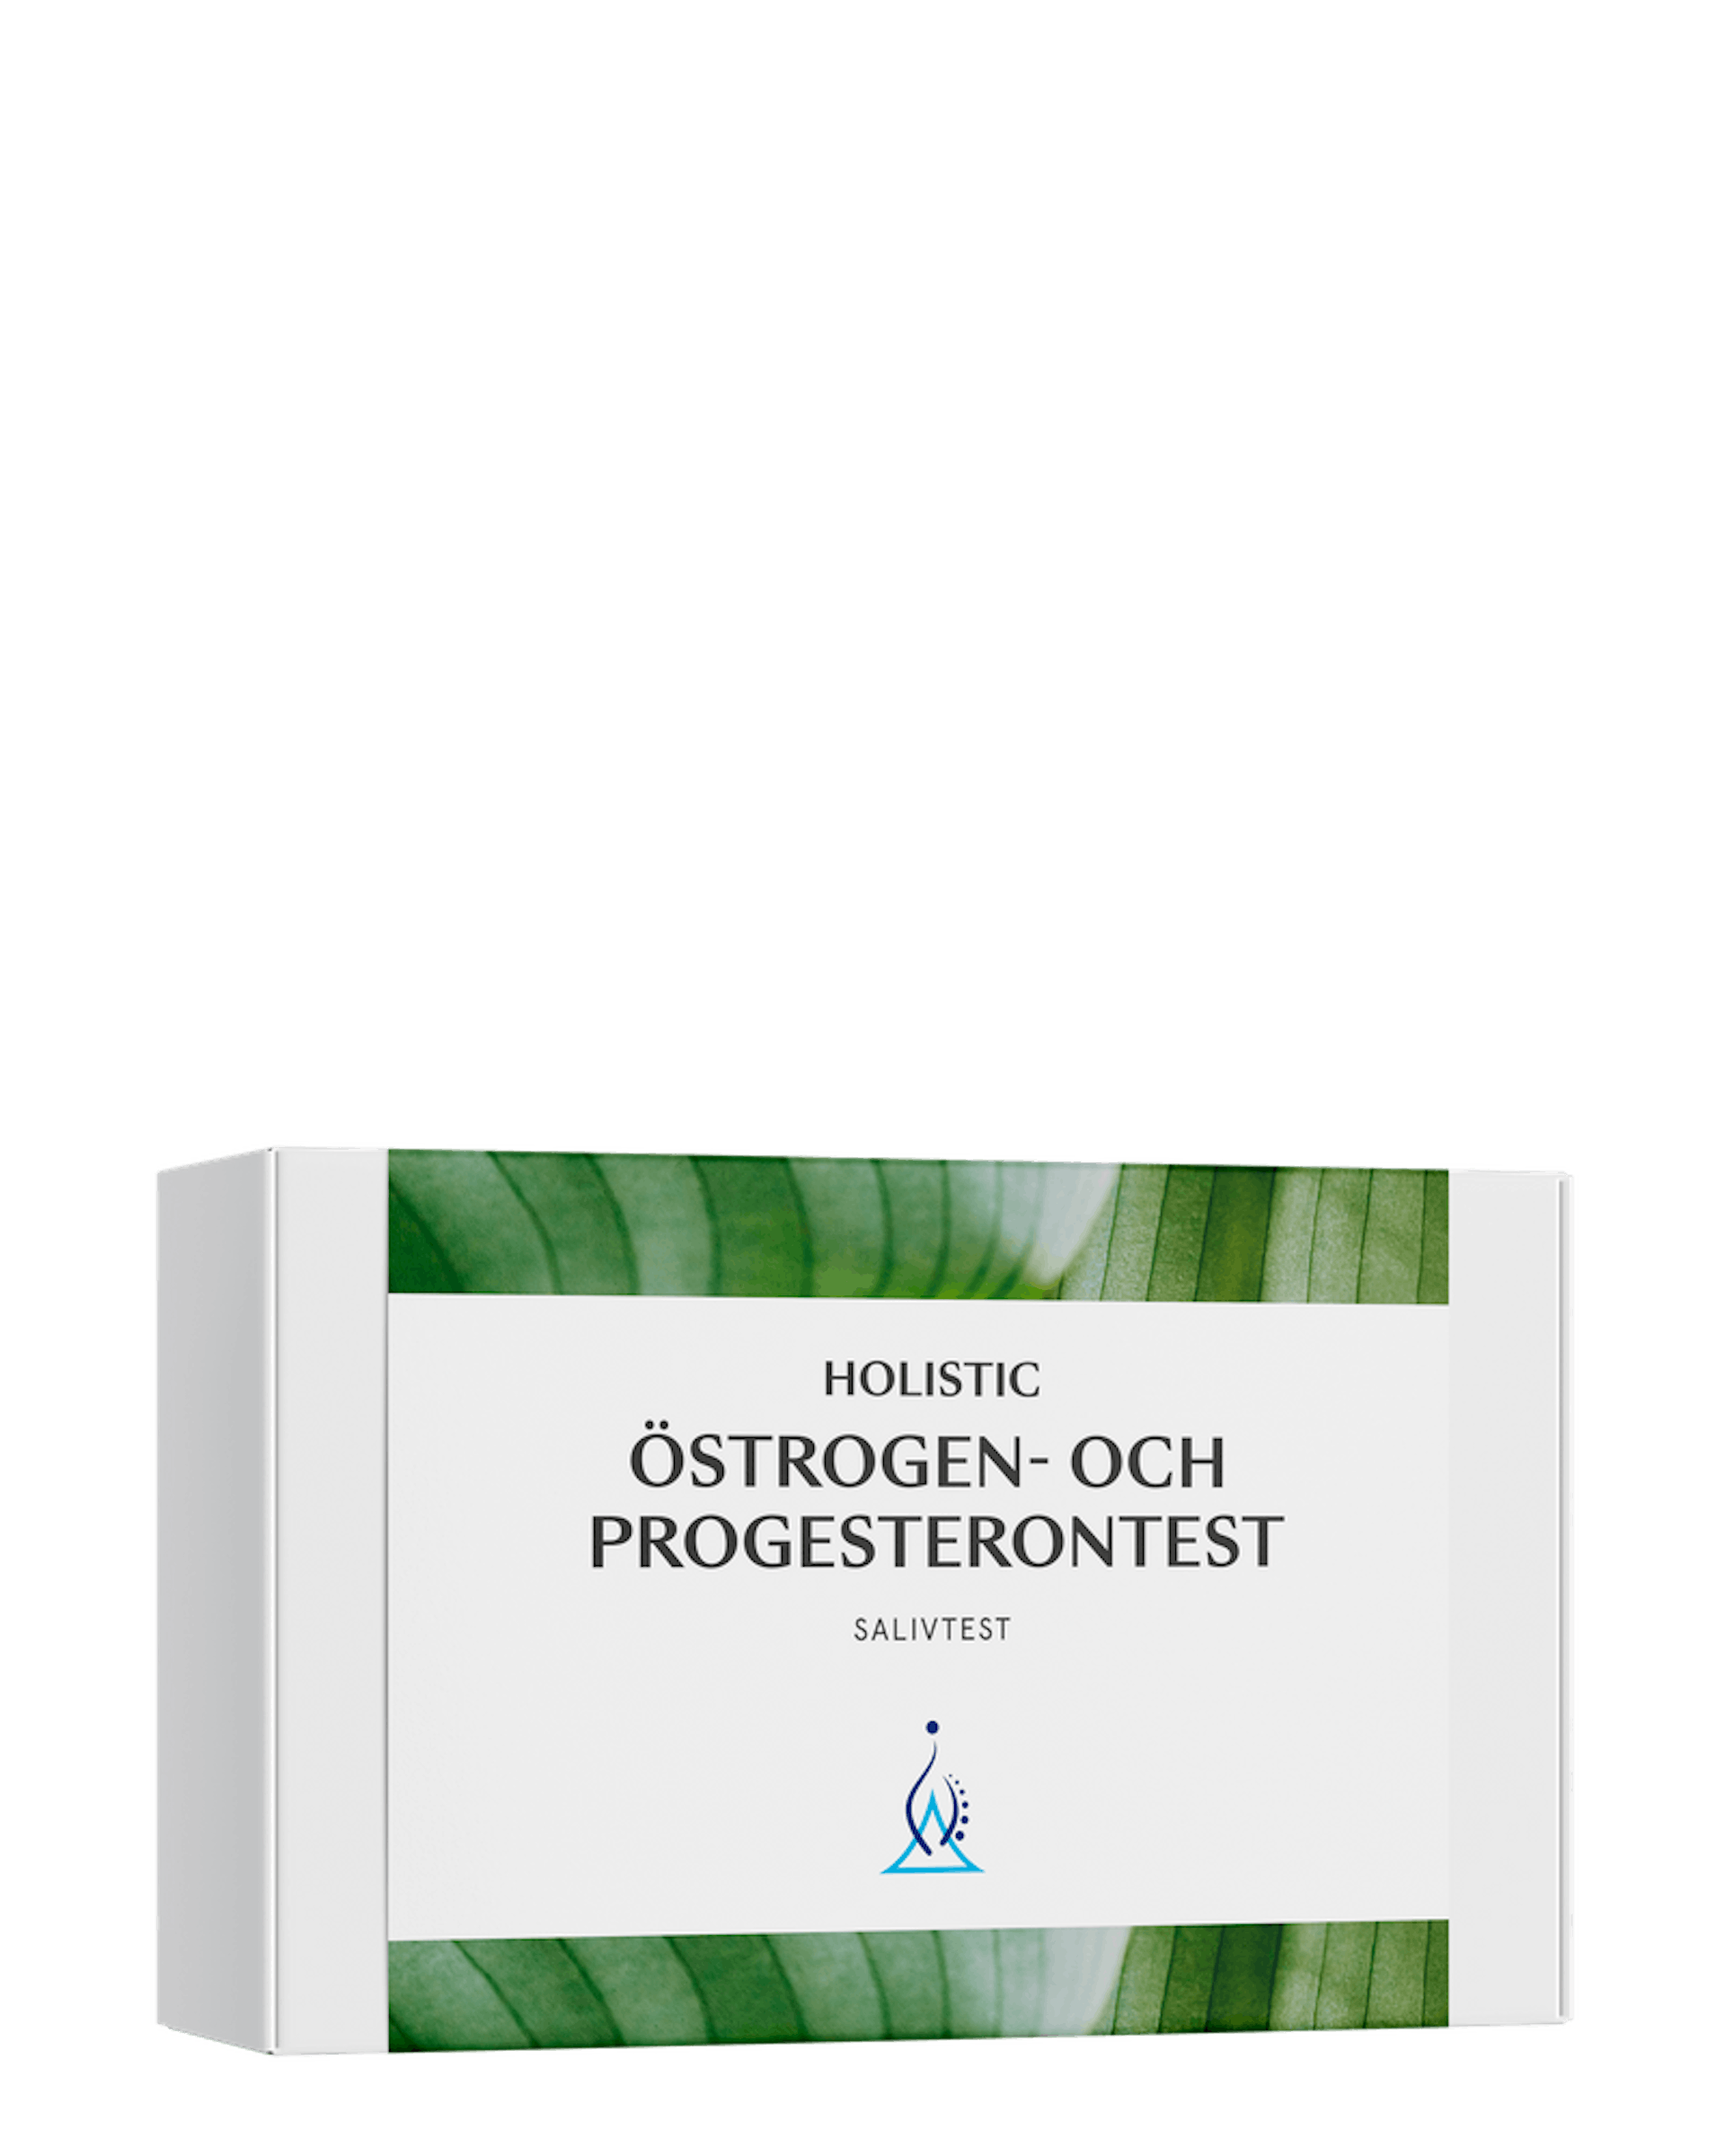 Holistic Östrogen- och progesterontest (1 av 1)